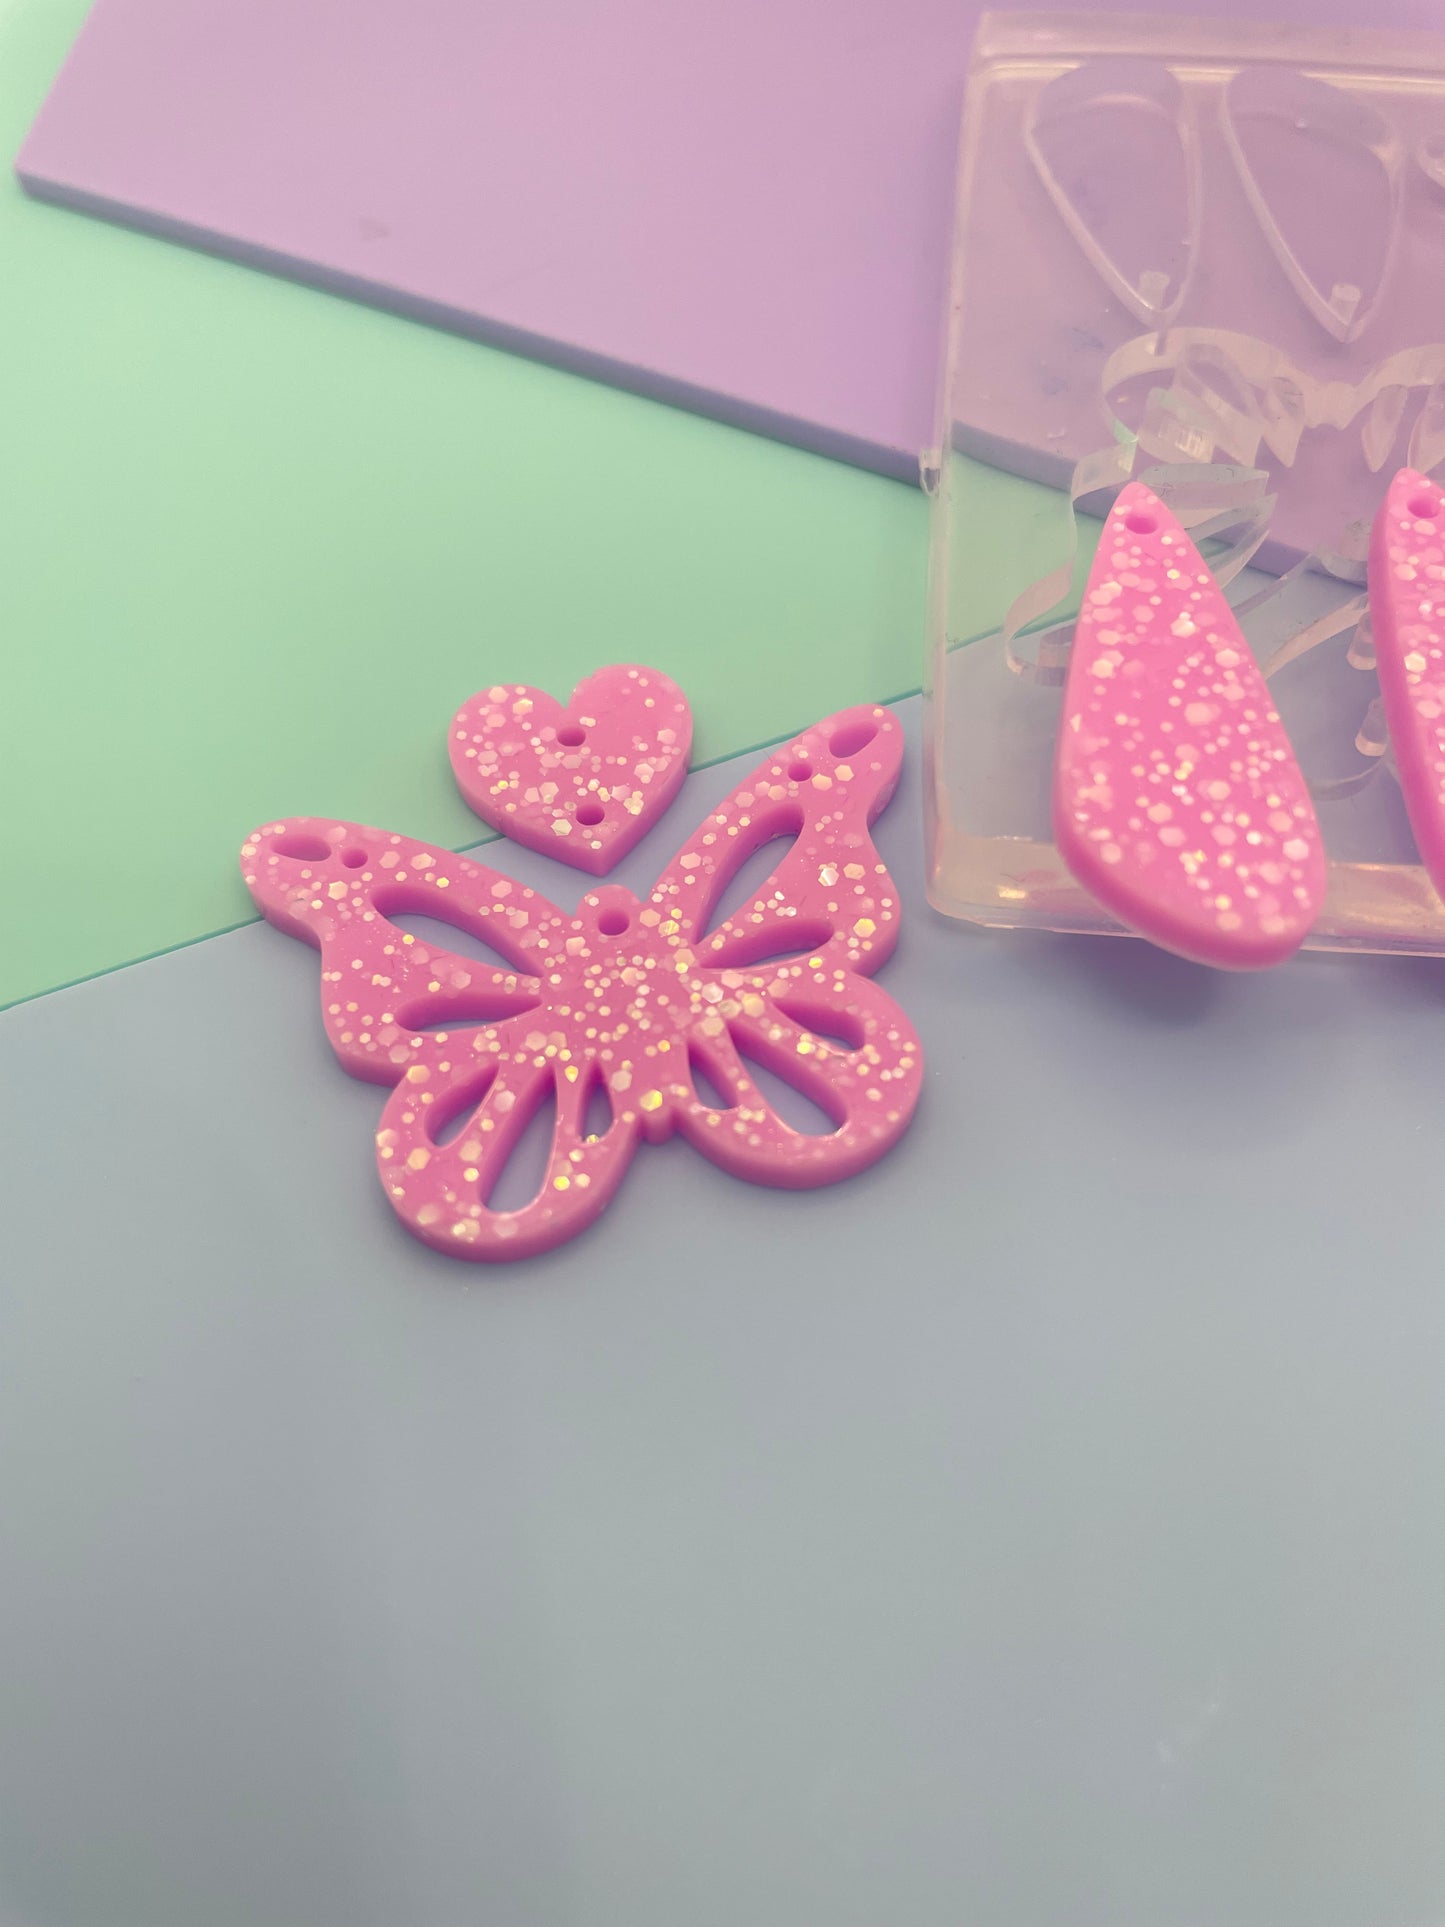 Heart butterfly dangle earring mold